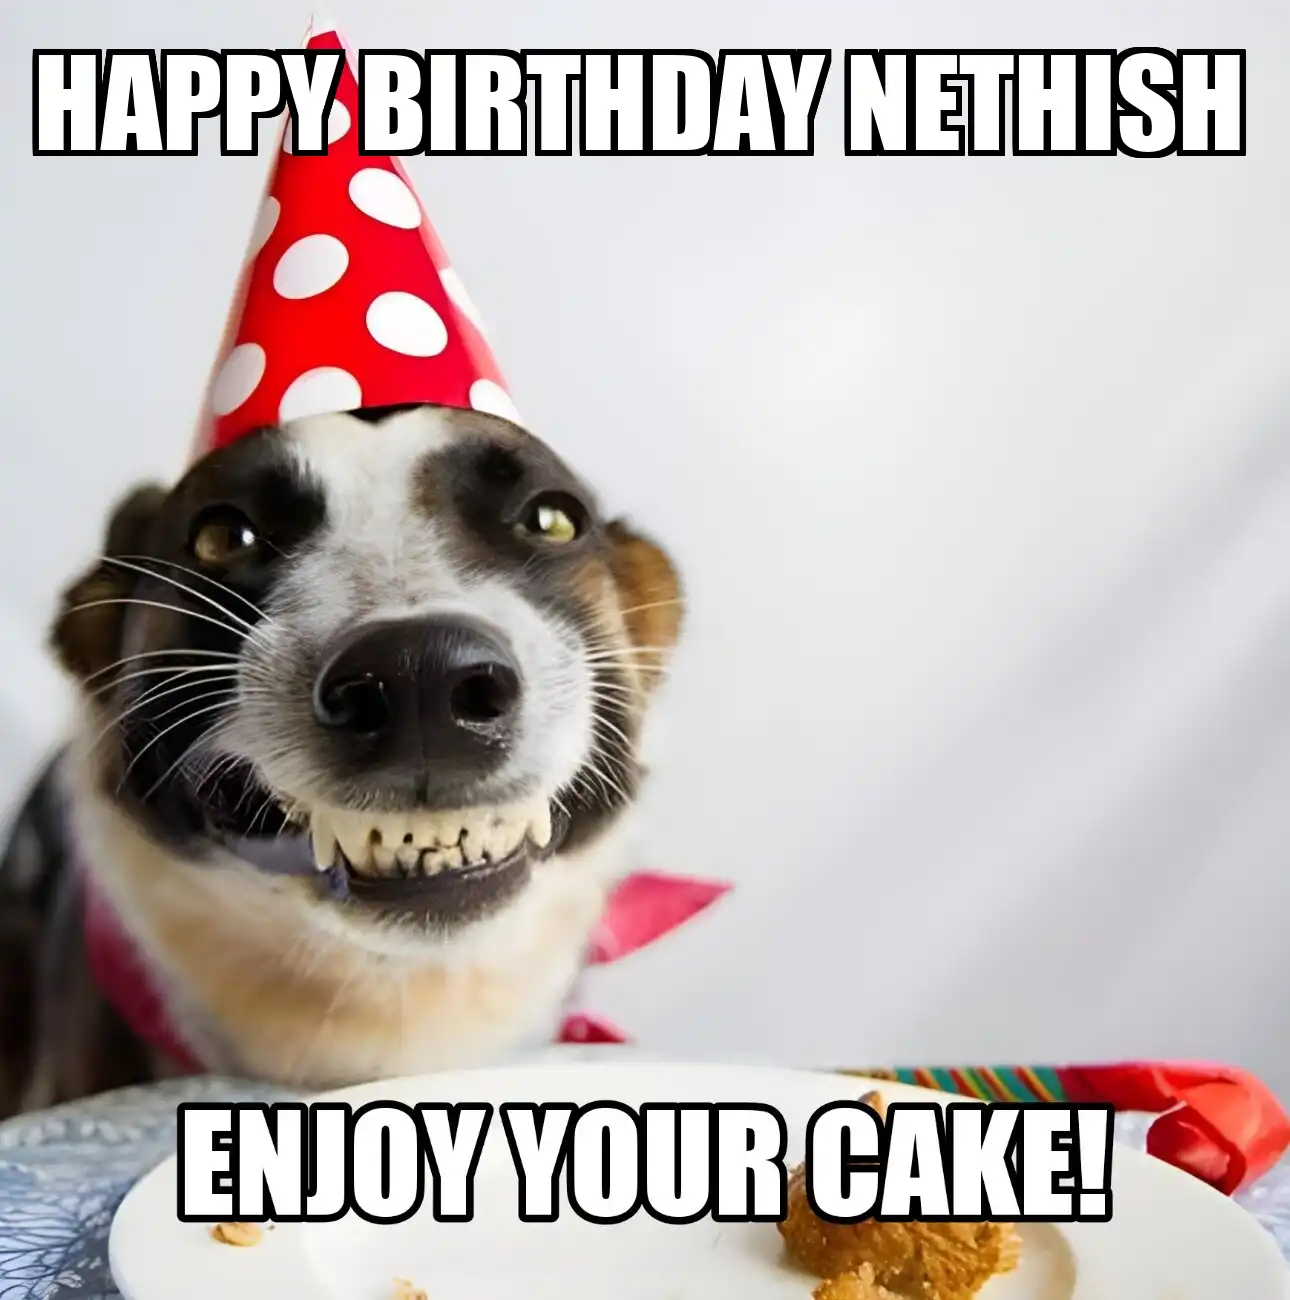 Happy Birthday Nethish Enjoy Your Cake Dog Meme